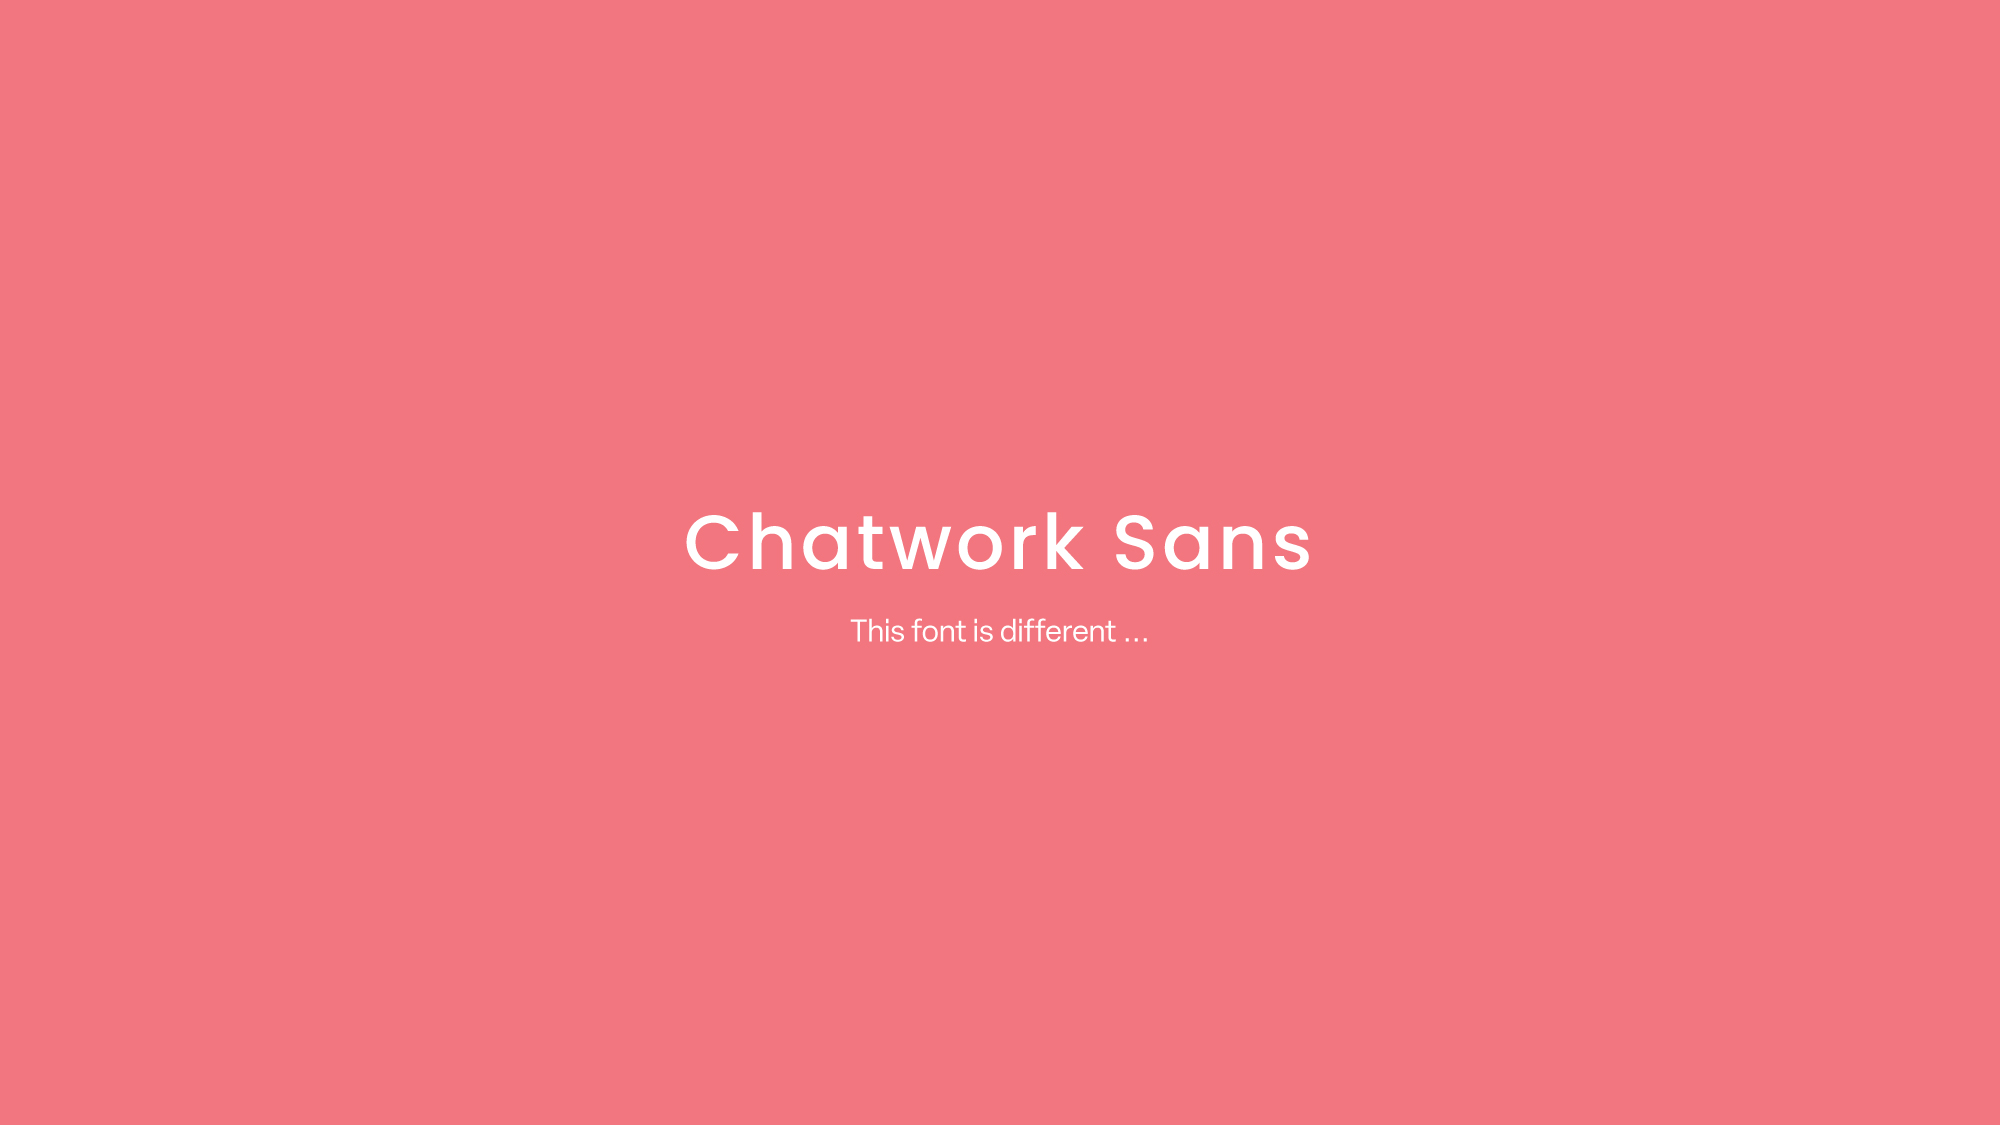 モリサワ Chatworkの新コーポレートフォント「Chatwork Sans」を開発